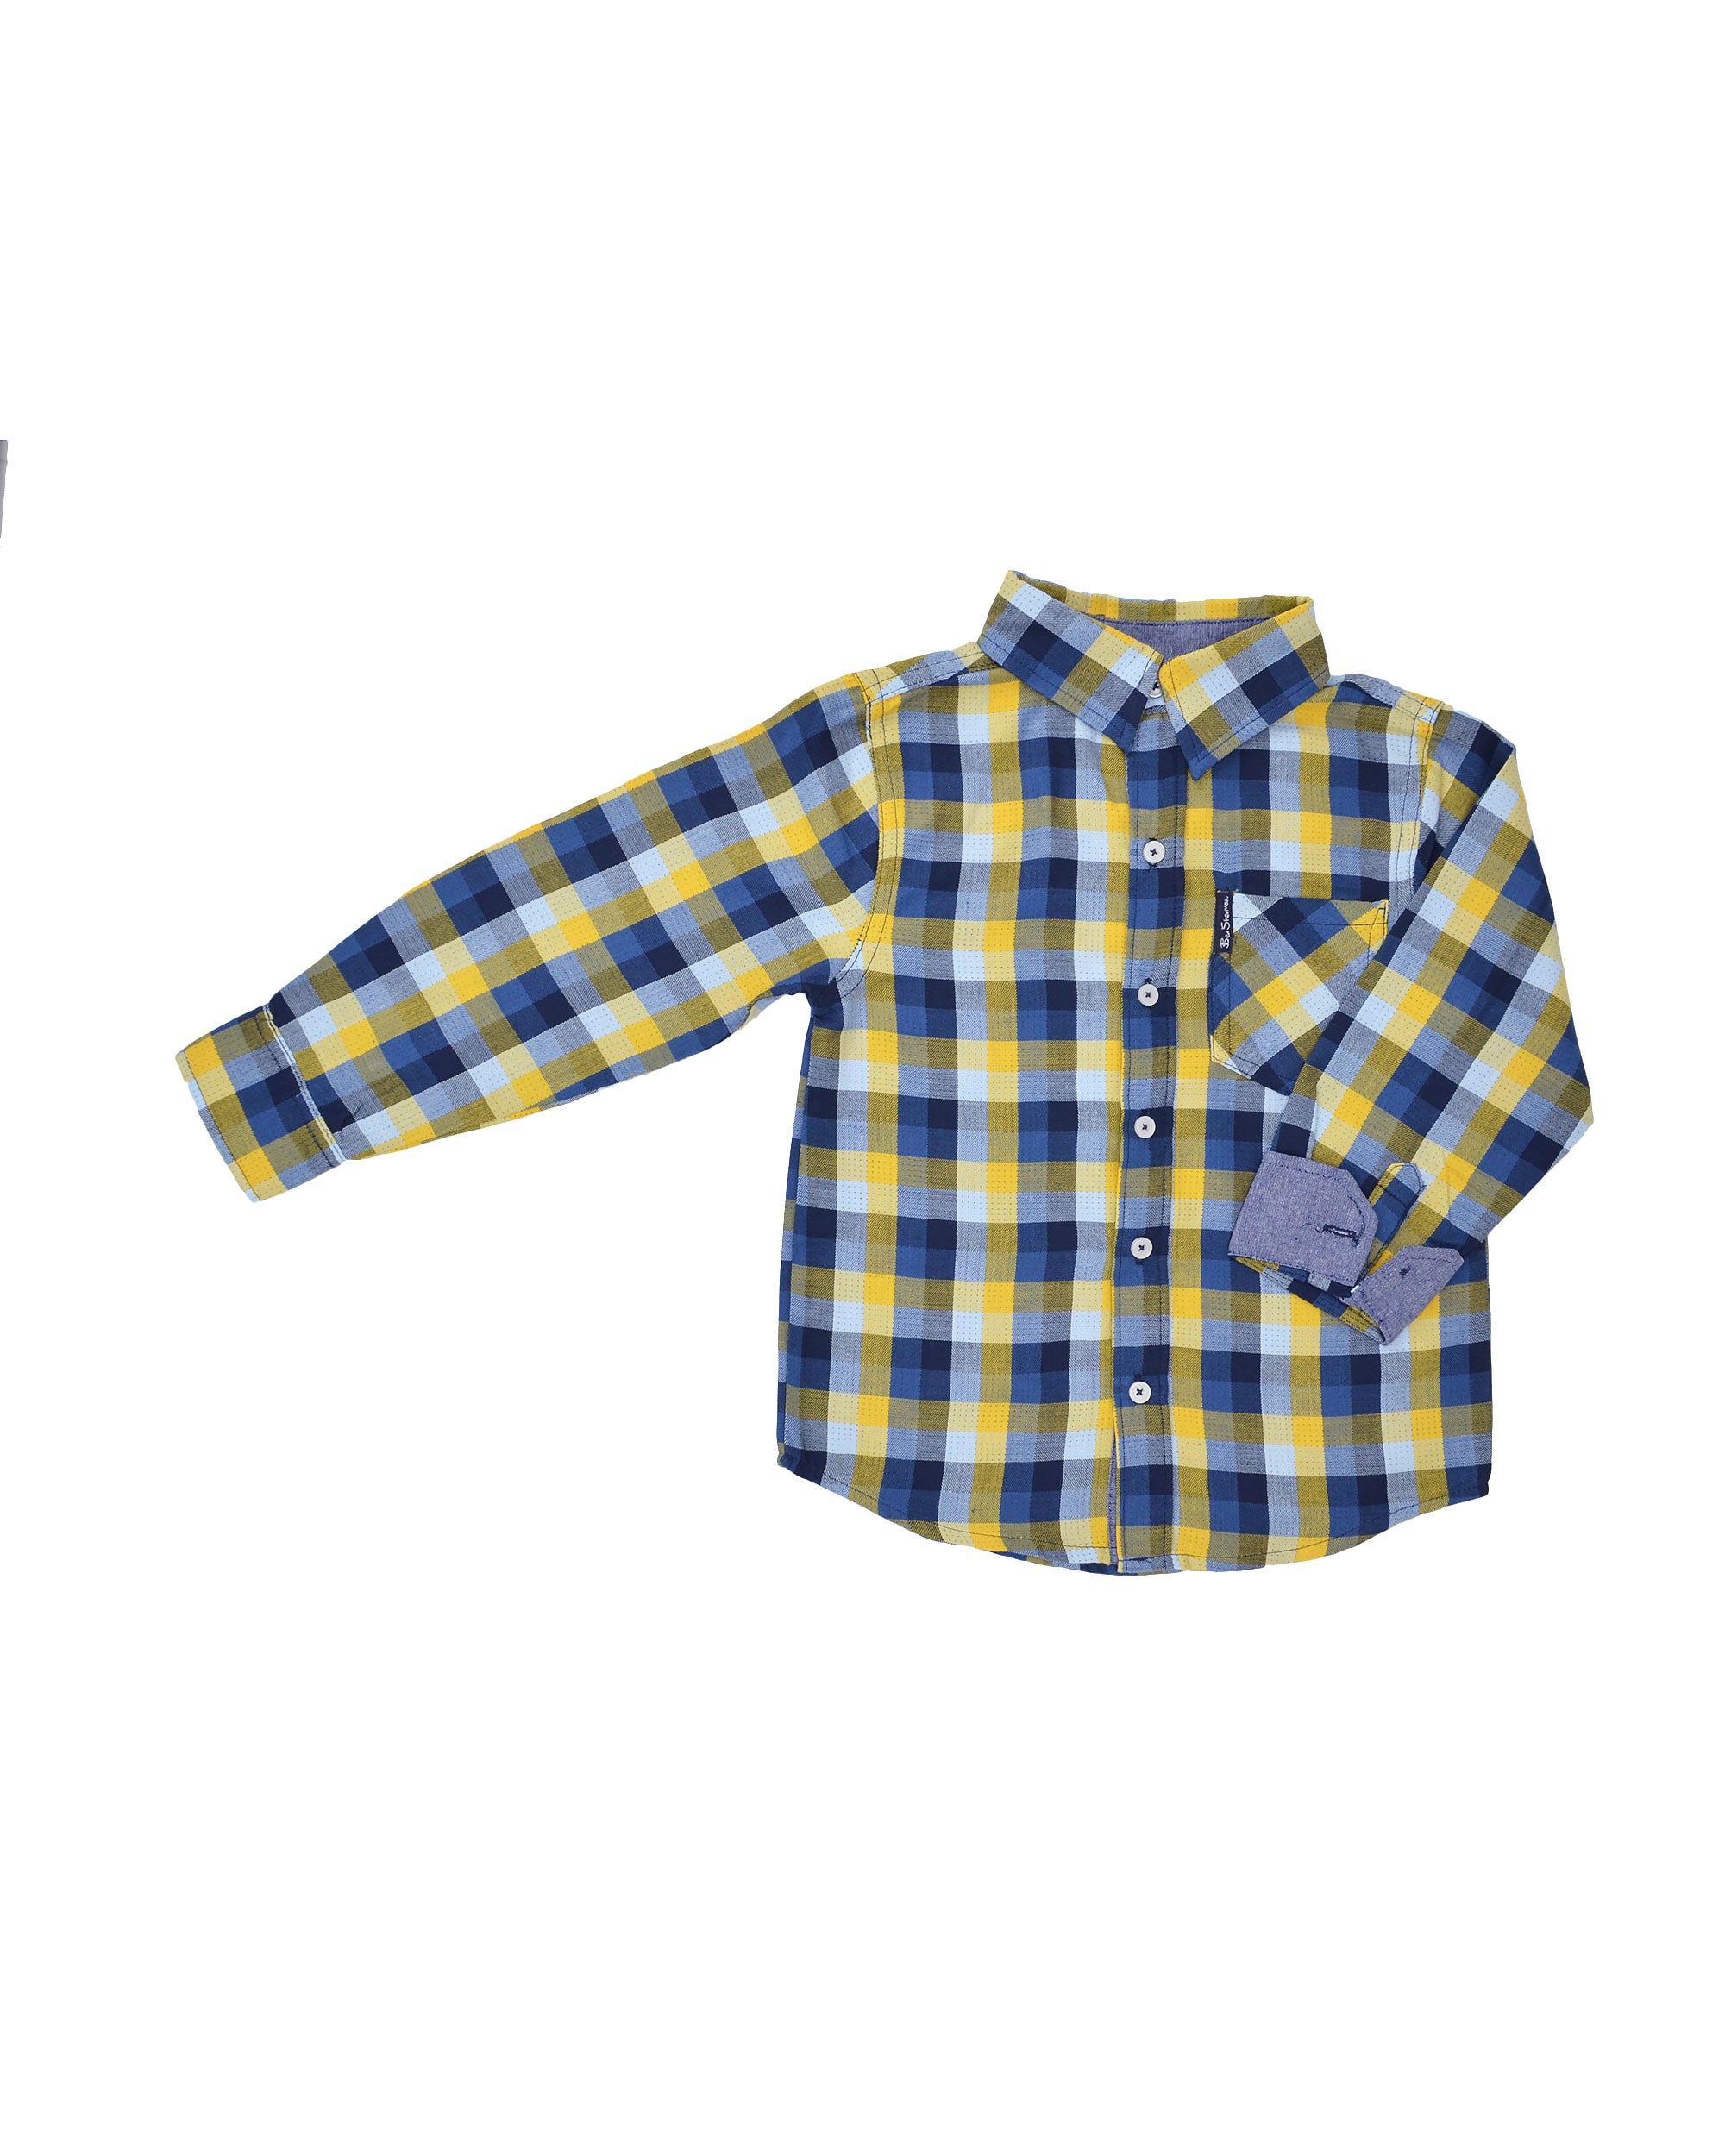 Boys' Blue/Yellow Plaid Gingham Button-Down Shirt (Sizes 4-7) – Ben Sherman